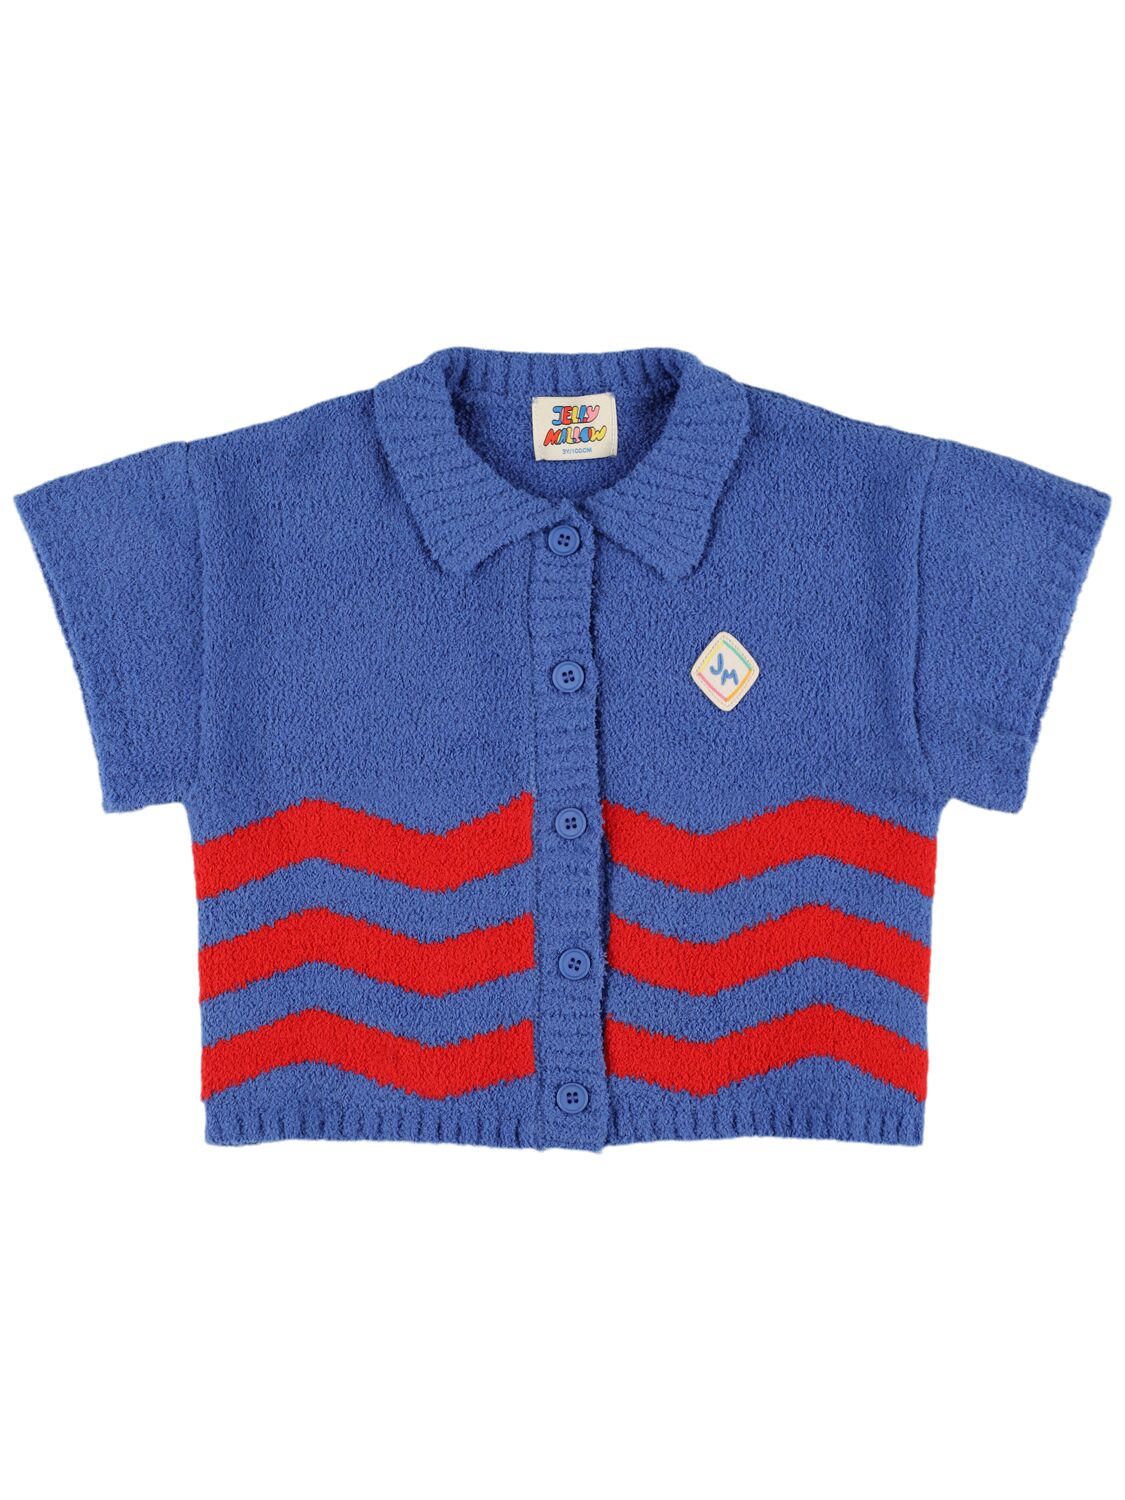 Jellymallow Kids' Tech Knit Shirt In Blue